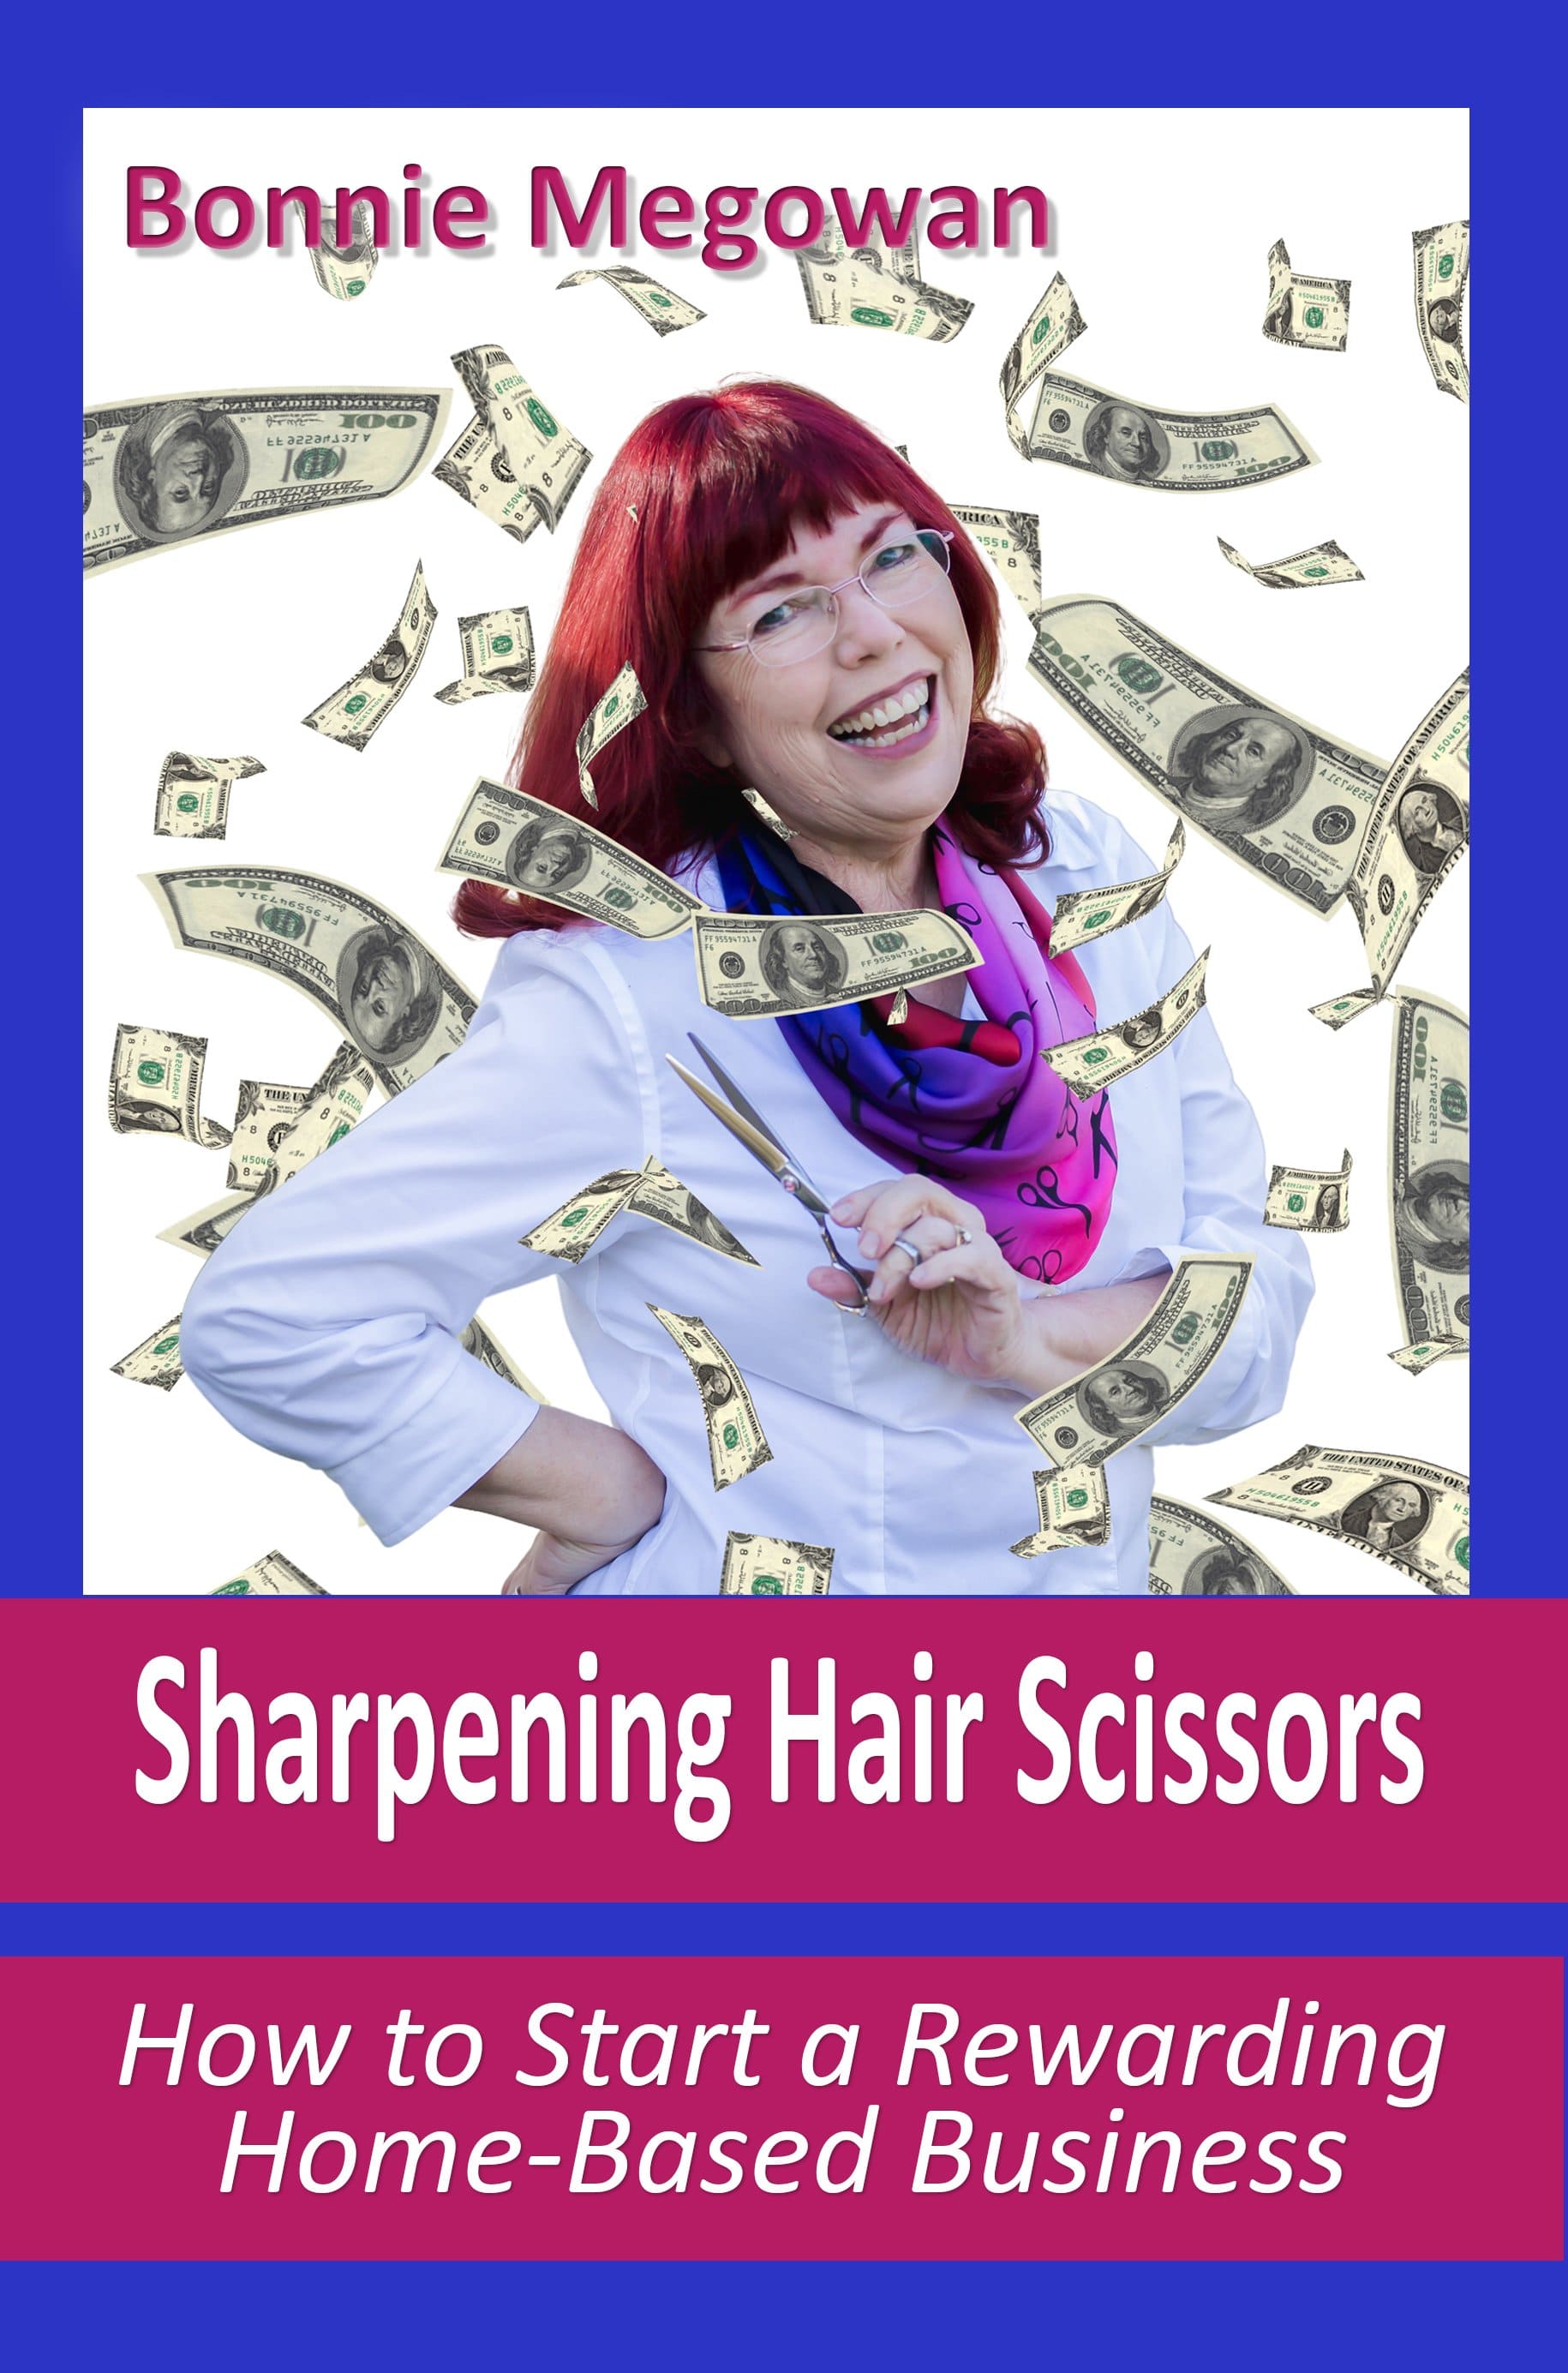 Sharpen Hair Scissors: 4 Easy Ways - Knife Sharpener Reviews